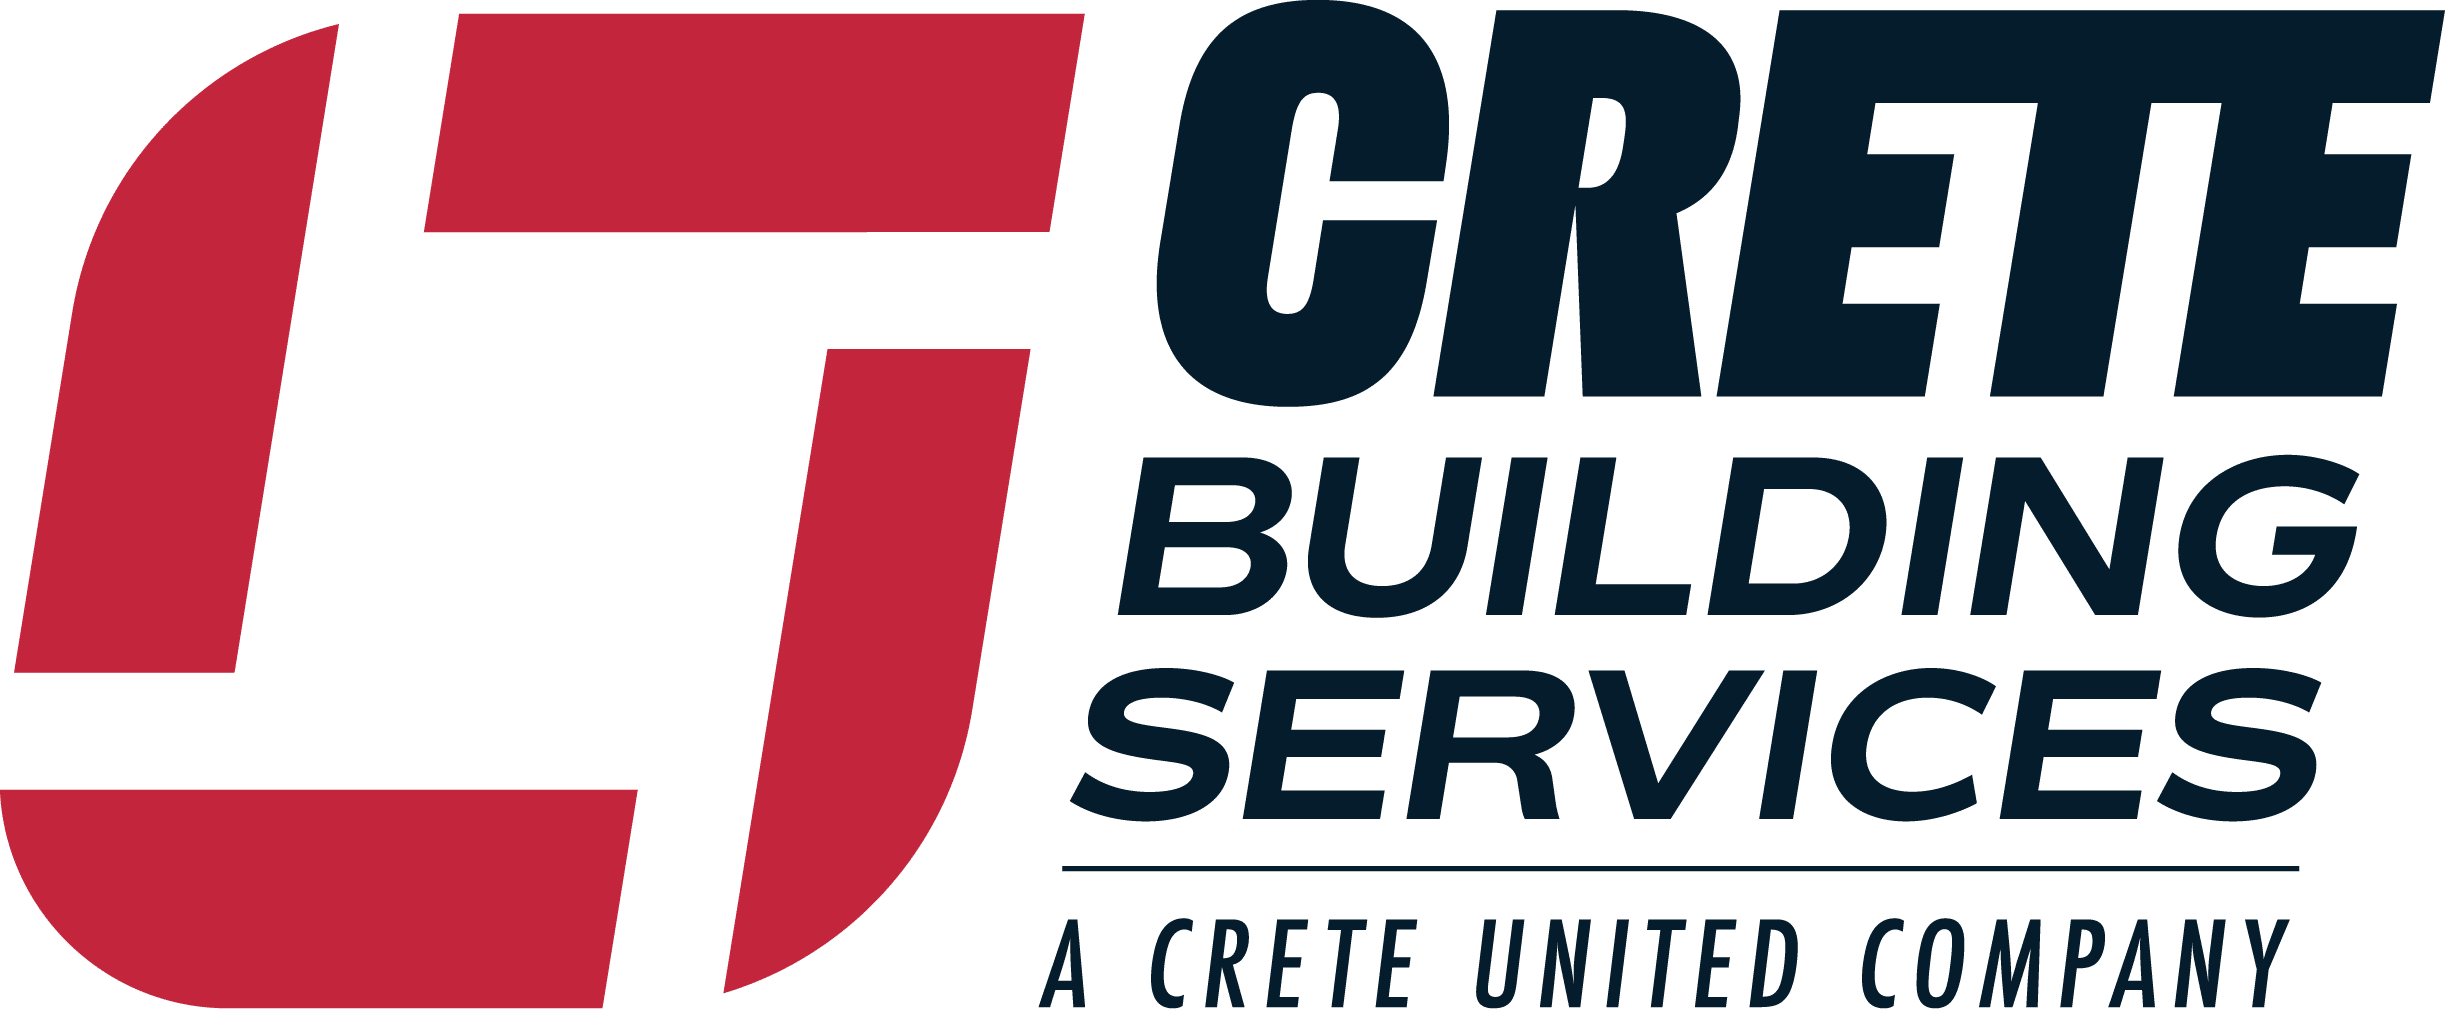 Crete Building Services logo